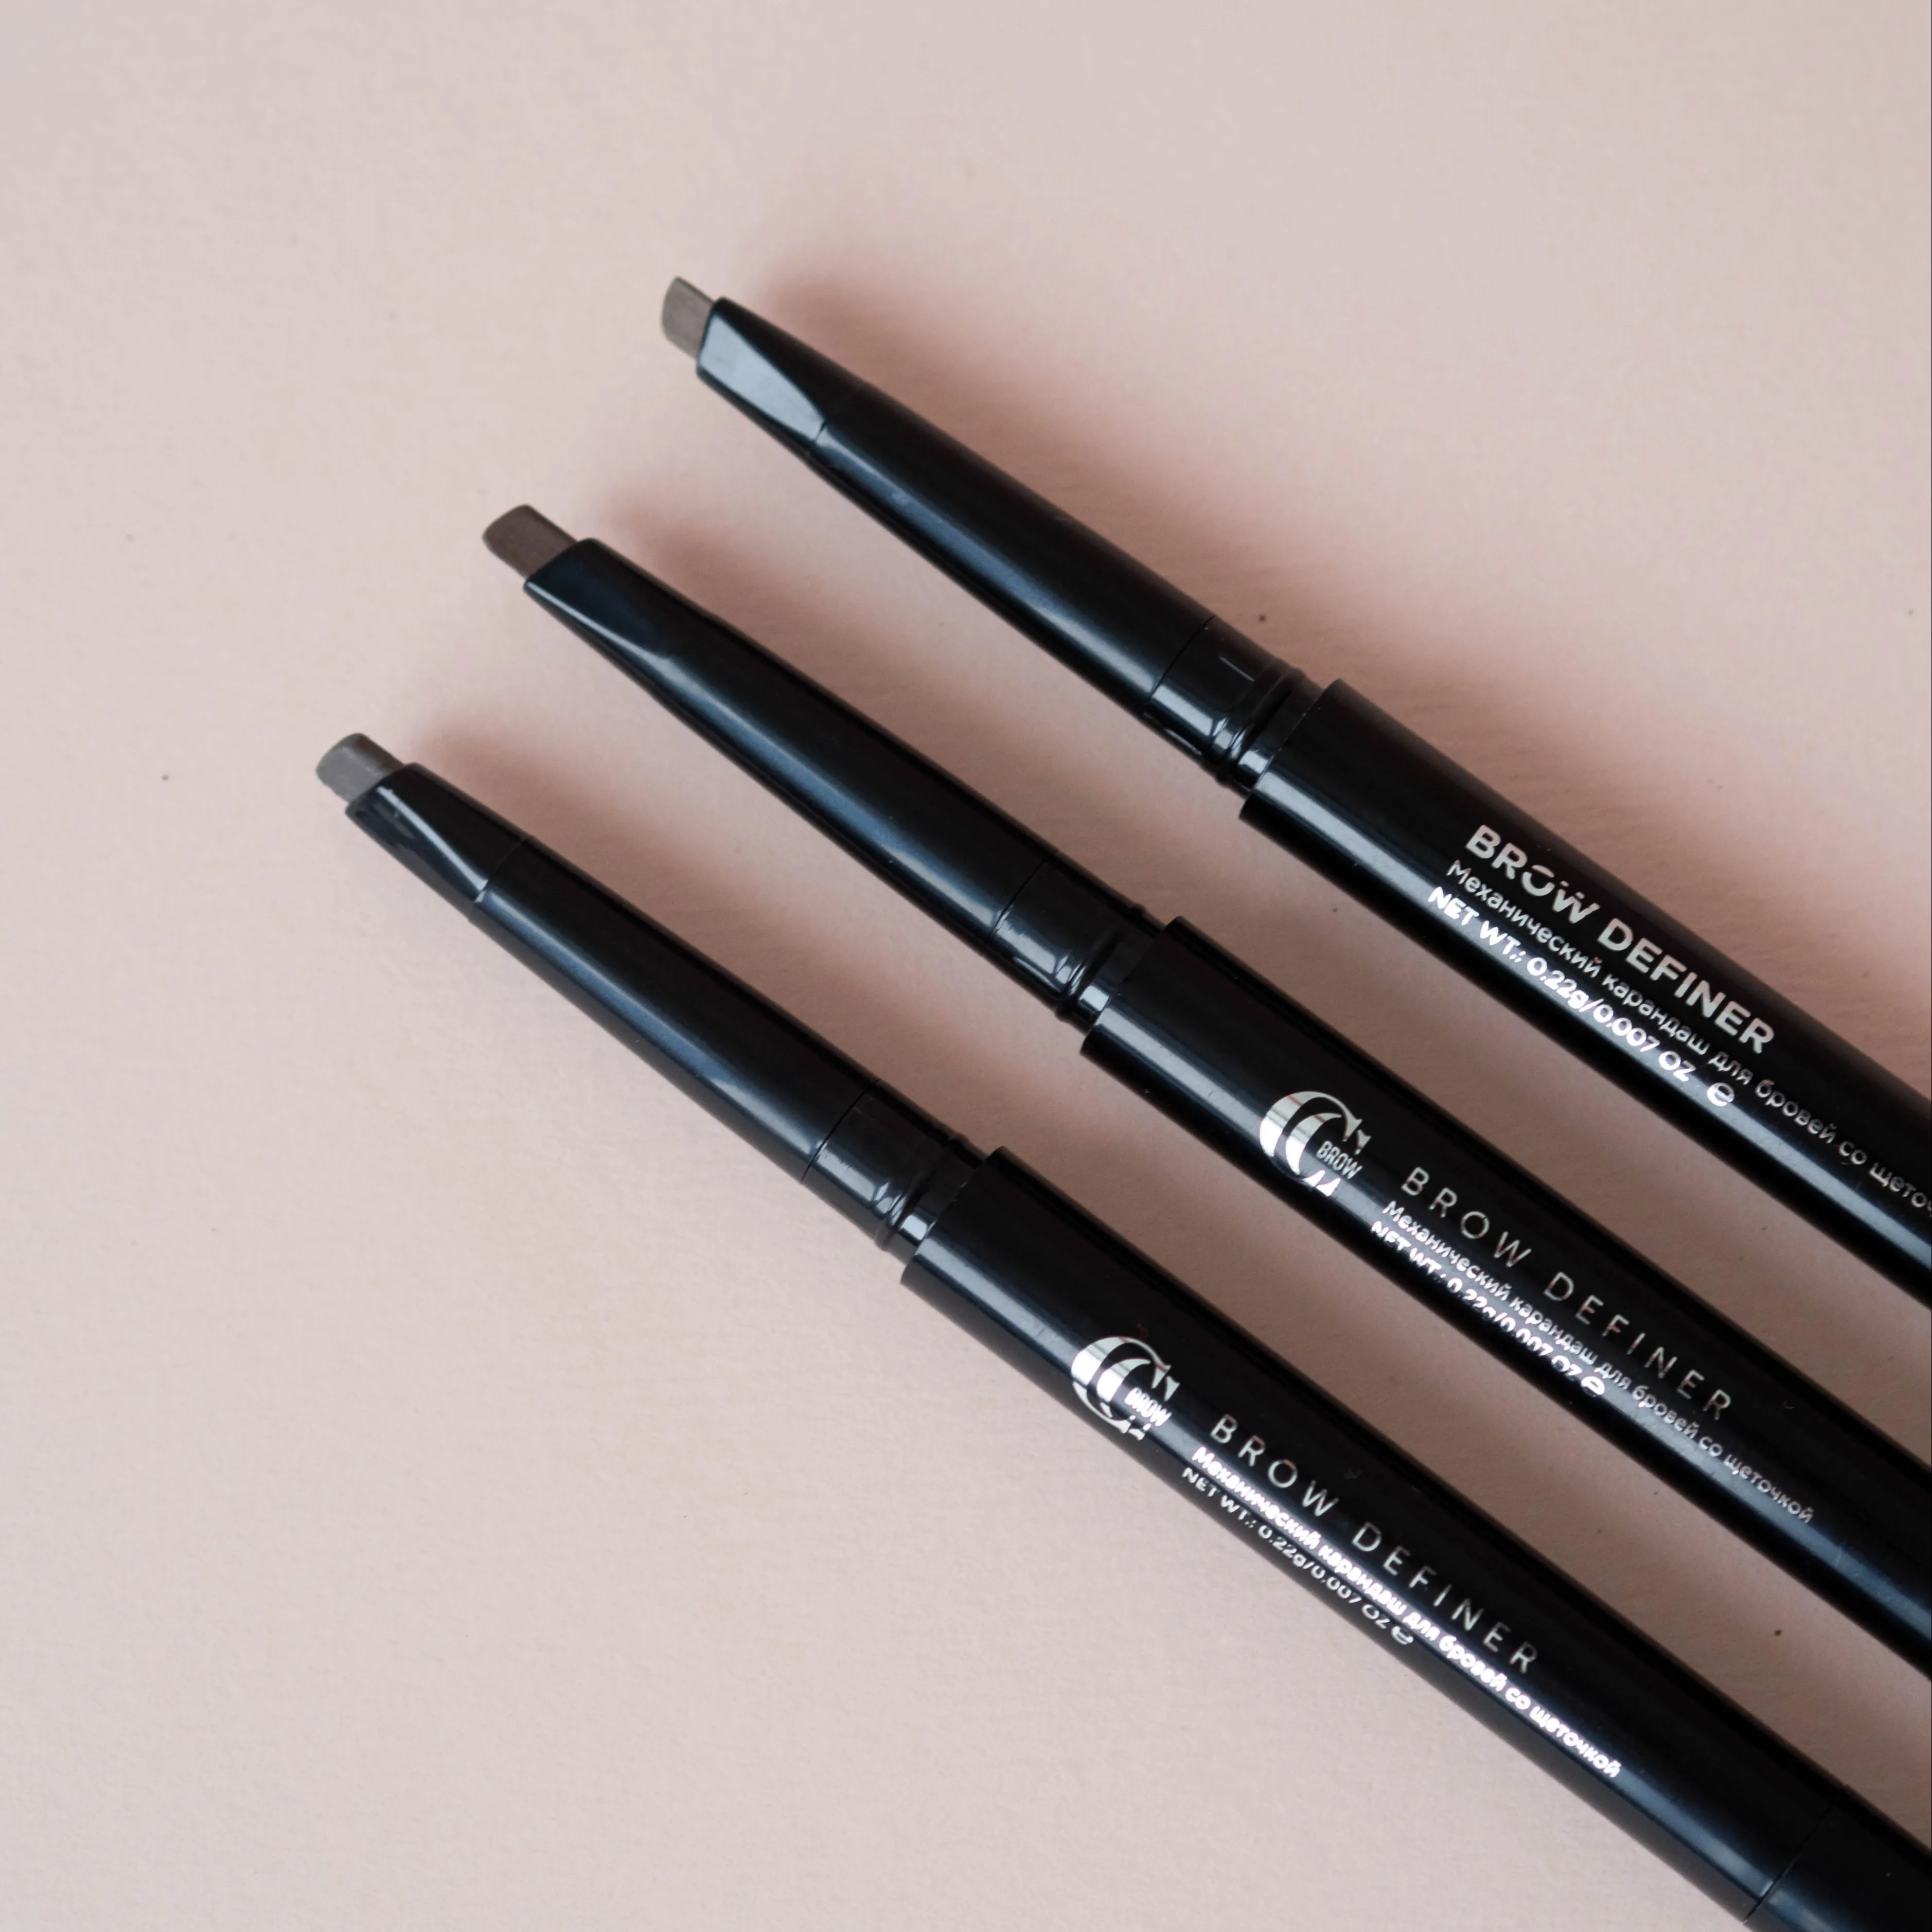 Cosmetic Eyebrow Pencil Brush Waterproof Long Lasting Blonde Makeup Private Label OEM Item 5 Colors Natural Tinting